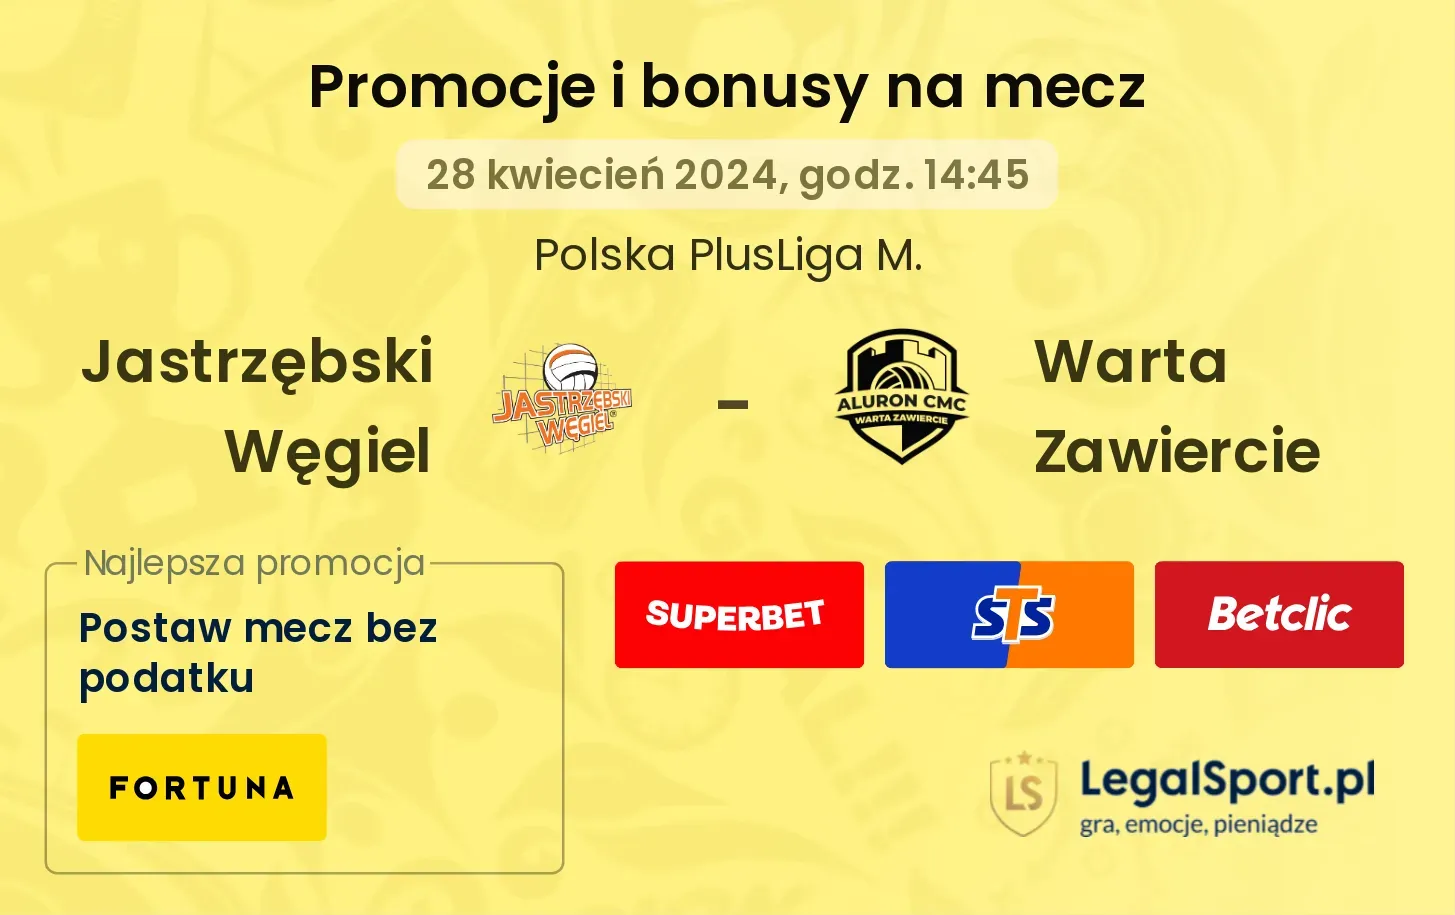 Jastrzębski Węgiel - Warta Zawiercie promocje bonusy na mecz